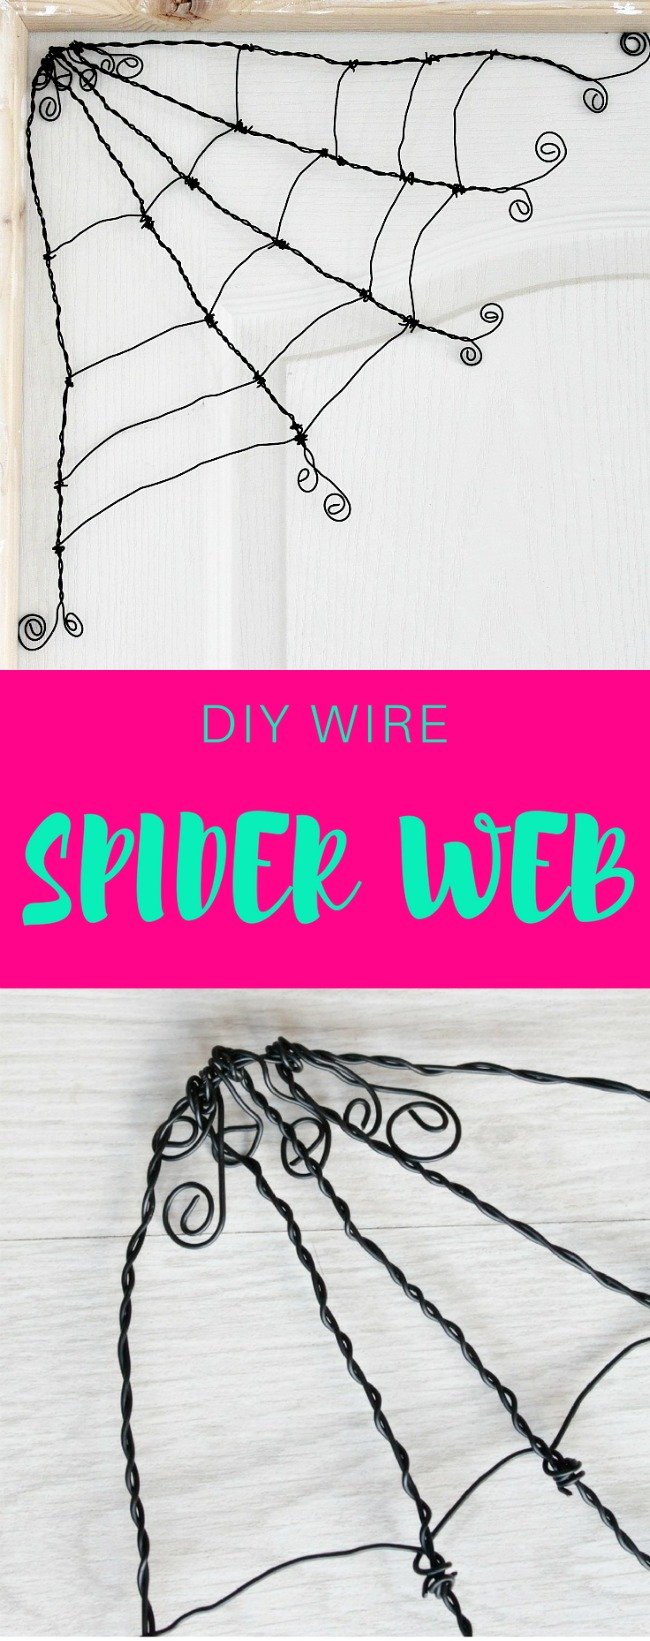 DIY spider web